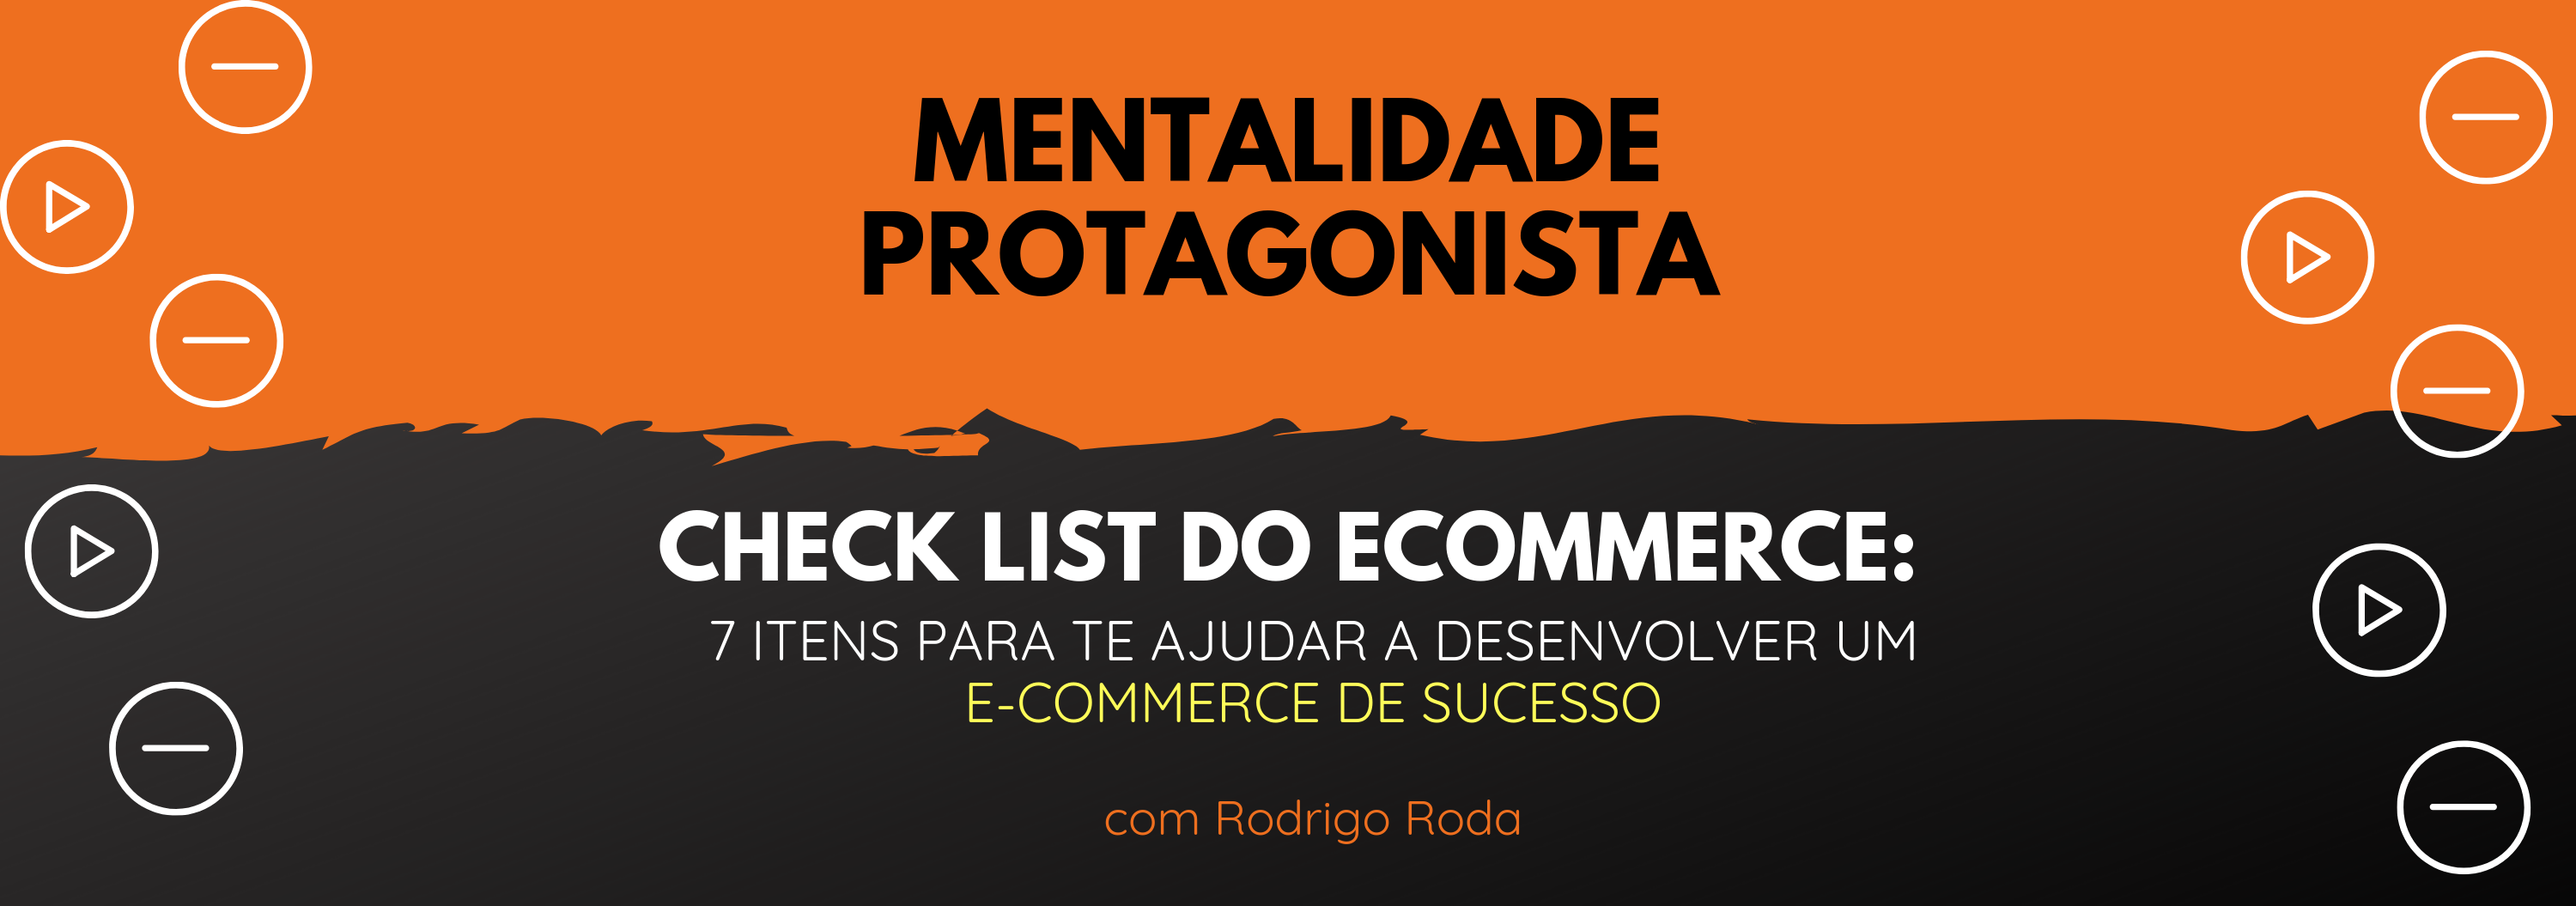 [Check List do E-commerce] 7 Itens para Desenvolver um E-commerce de Sucesso, com Rodrigo Roda